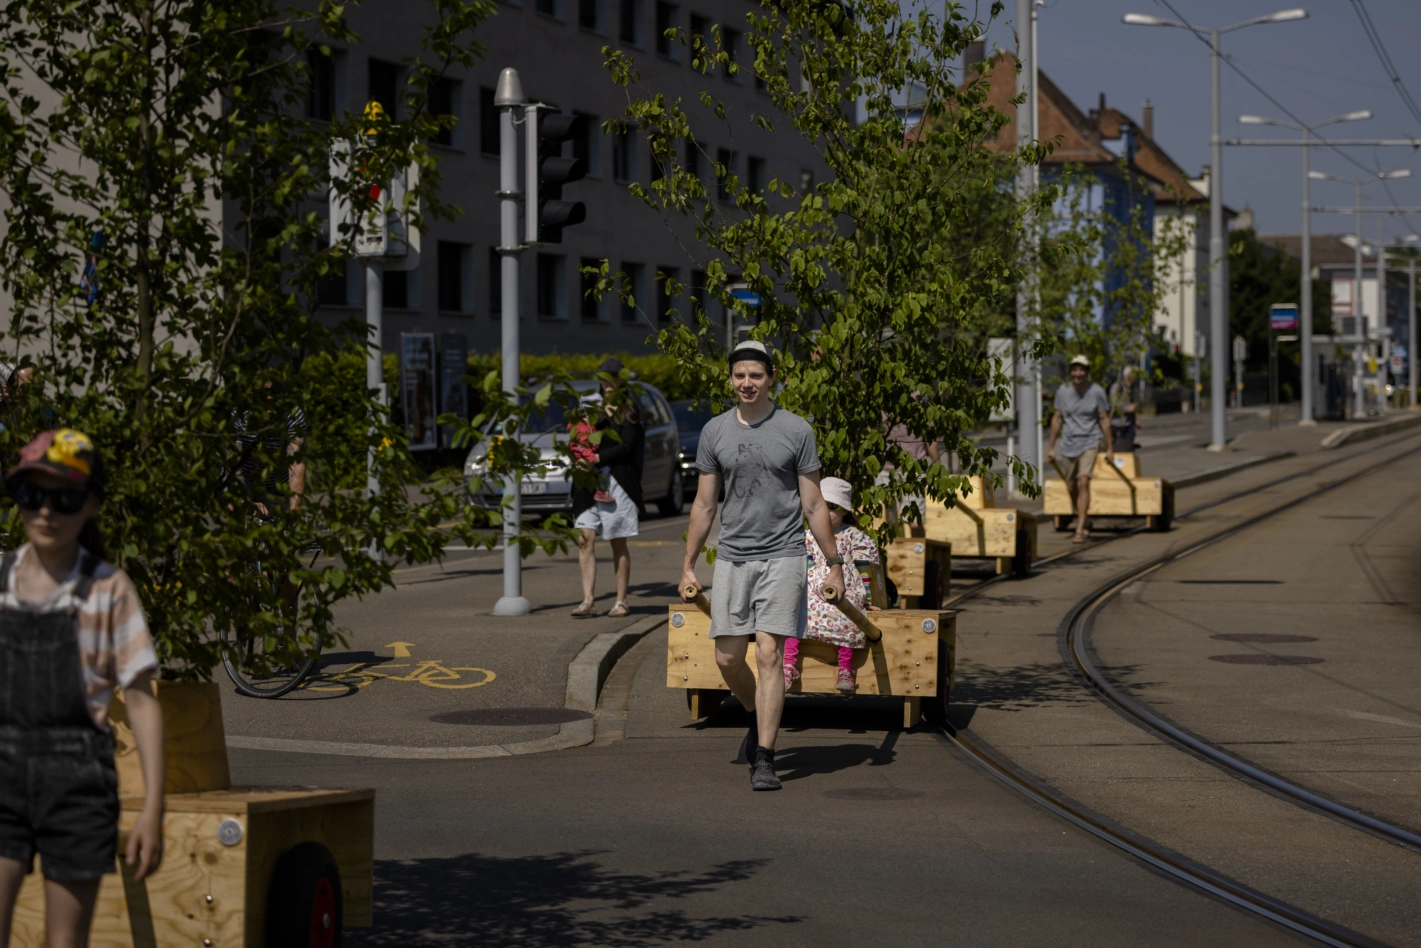 Die Umweltorganisation Umverkehr stellte diesen Sommer an verschiedenen Orten in Zürich Bäume auf, um zu zeigen, dass mehr Grün möglich ist. Foto: Michael Buholzer (Keystone)